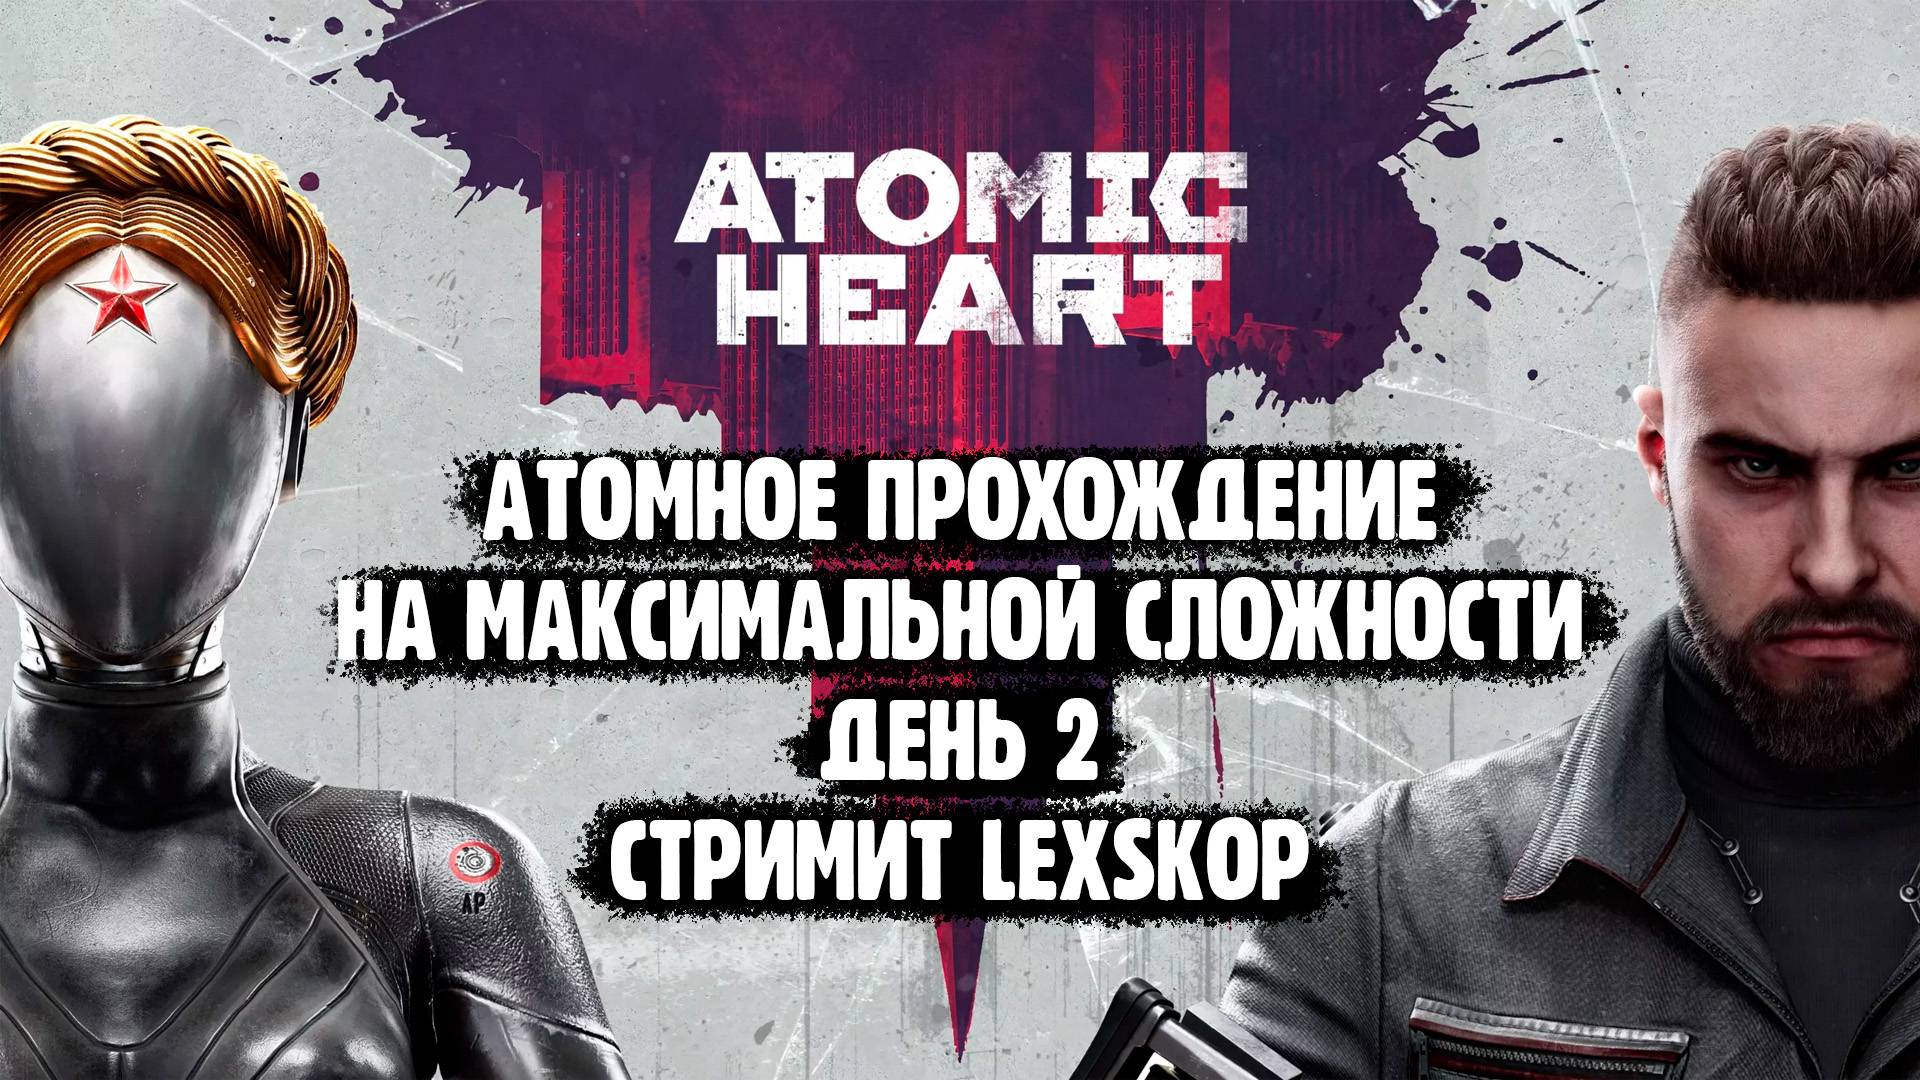 Atomic Heart | День 2 | Максимальная сложность | Атомное прохождение